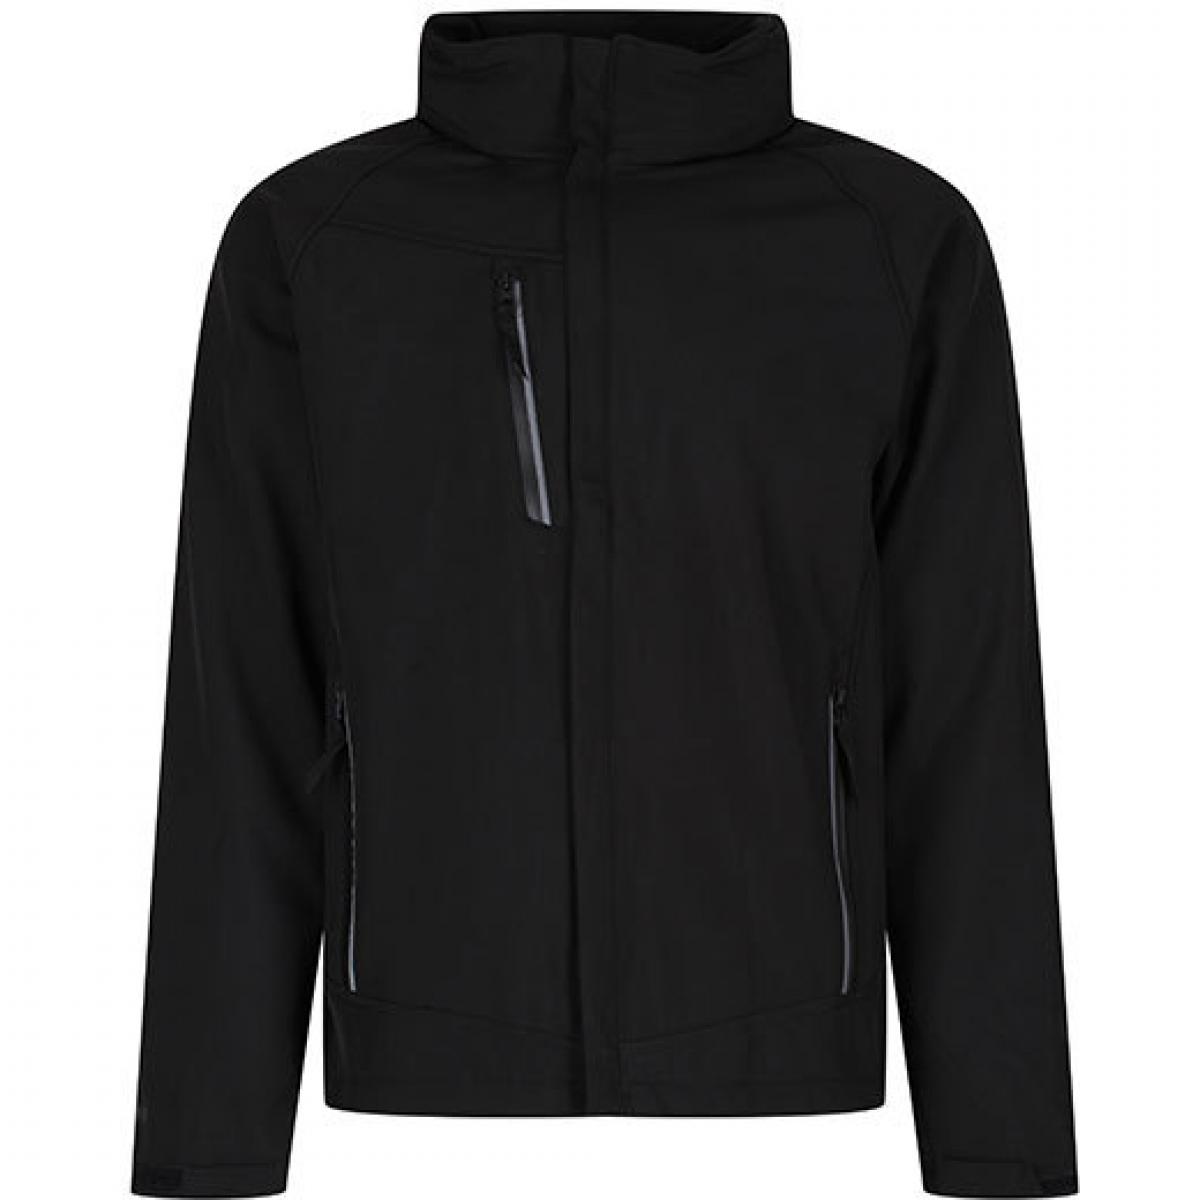 Hersteller: Regatta Herstellernummer: TRA670 Artikelbezeichnung: Herren Apex Waterproof Breathable Softshell Jacket Farbe: Black